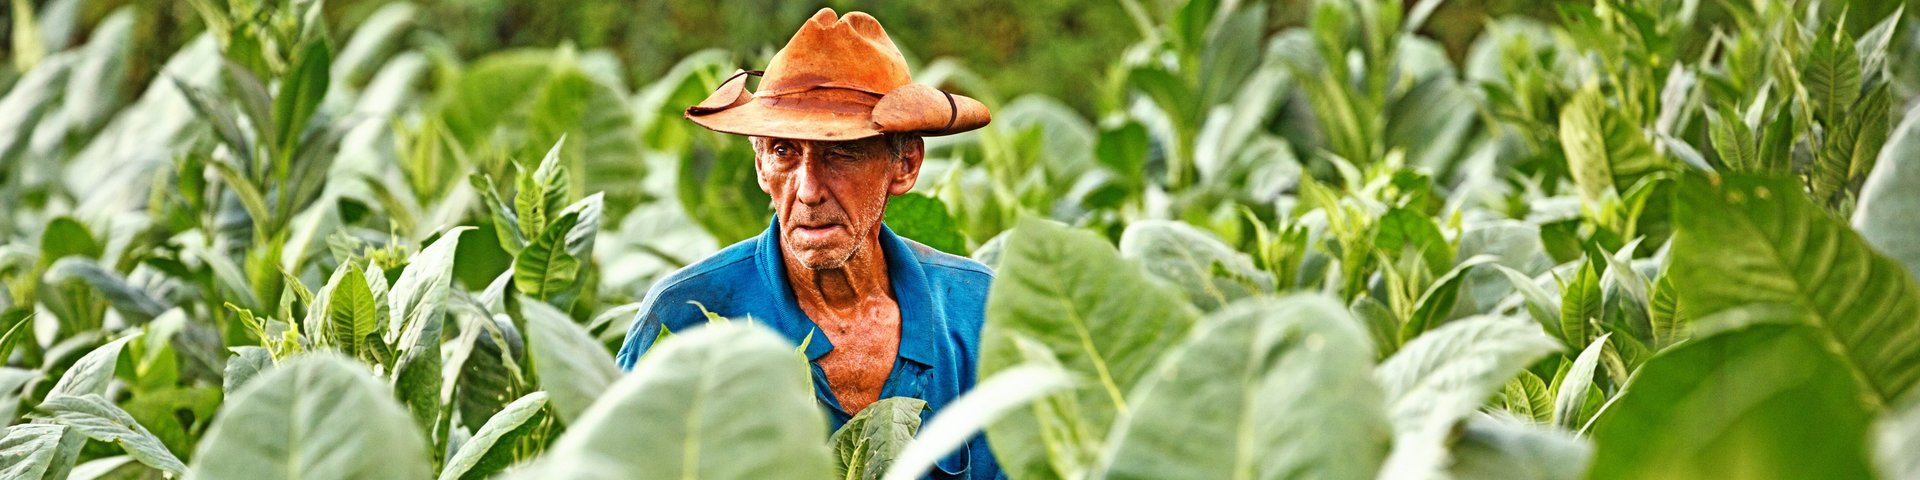 Kubanischer Bauer erntet Tabak auf seinem Feld auf Kuba